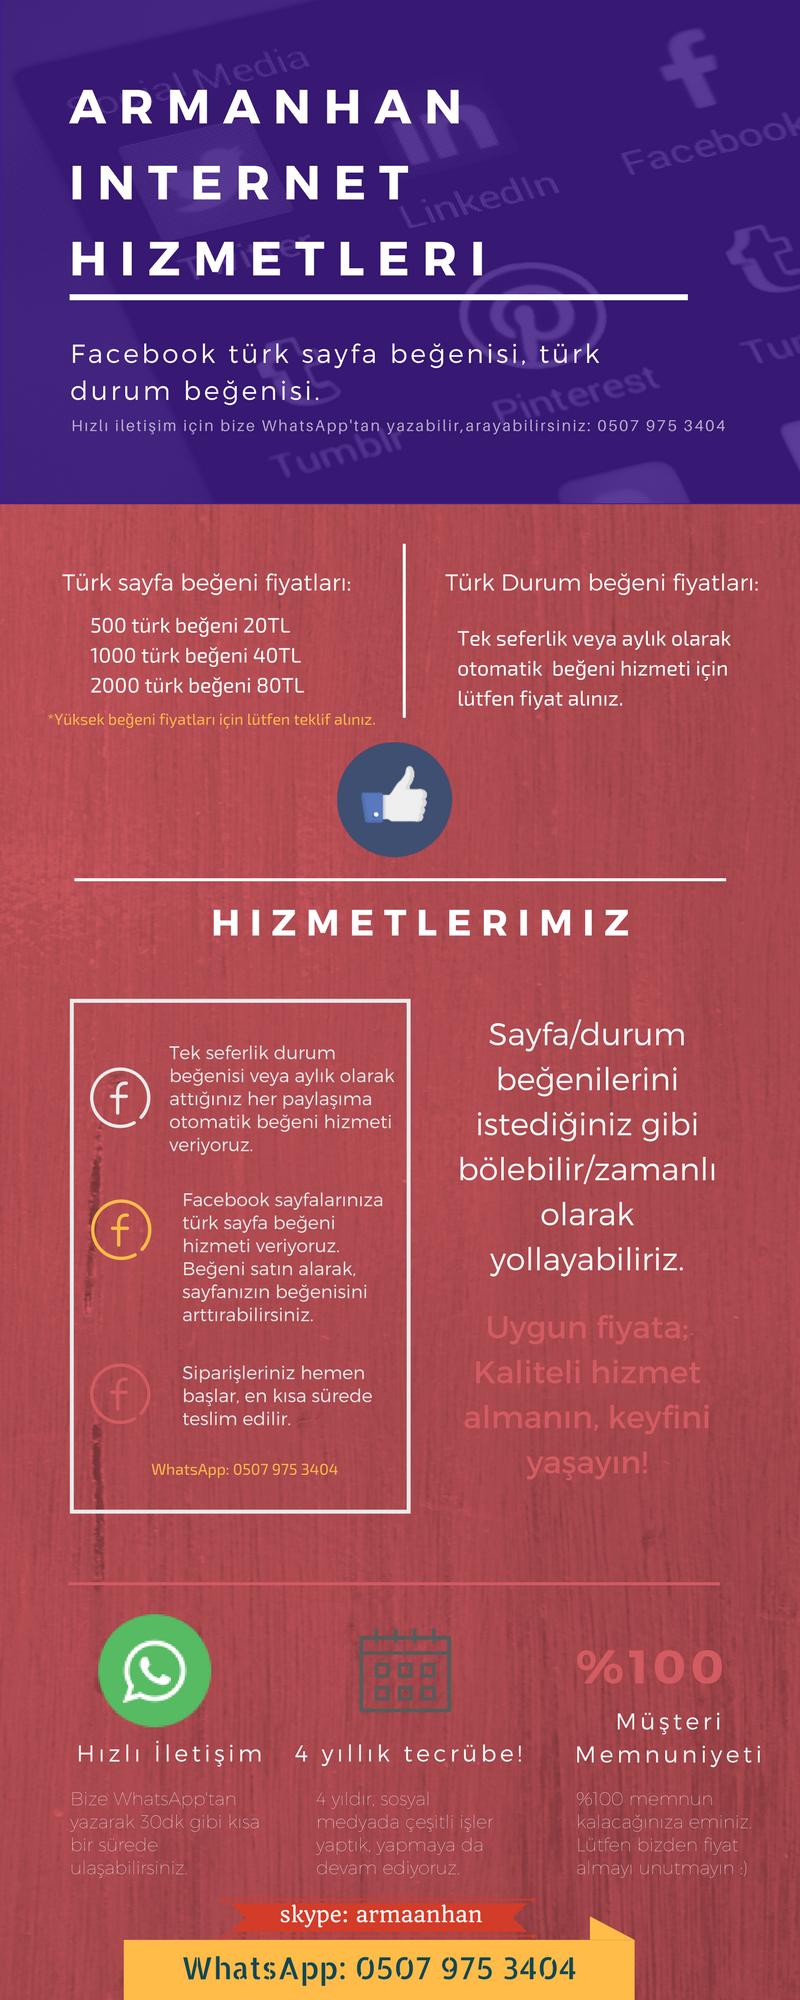 BAKMADAN GEÇME! EN UCUZ FİYATLARA; Facebook Sayfanıza,Profilinize Otomatik Türk Durum Beğenisi #Türk